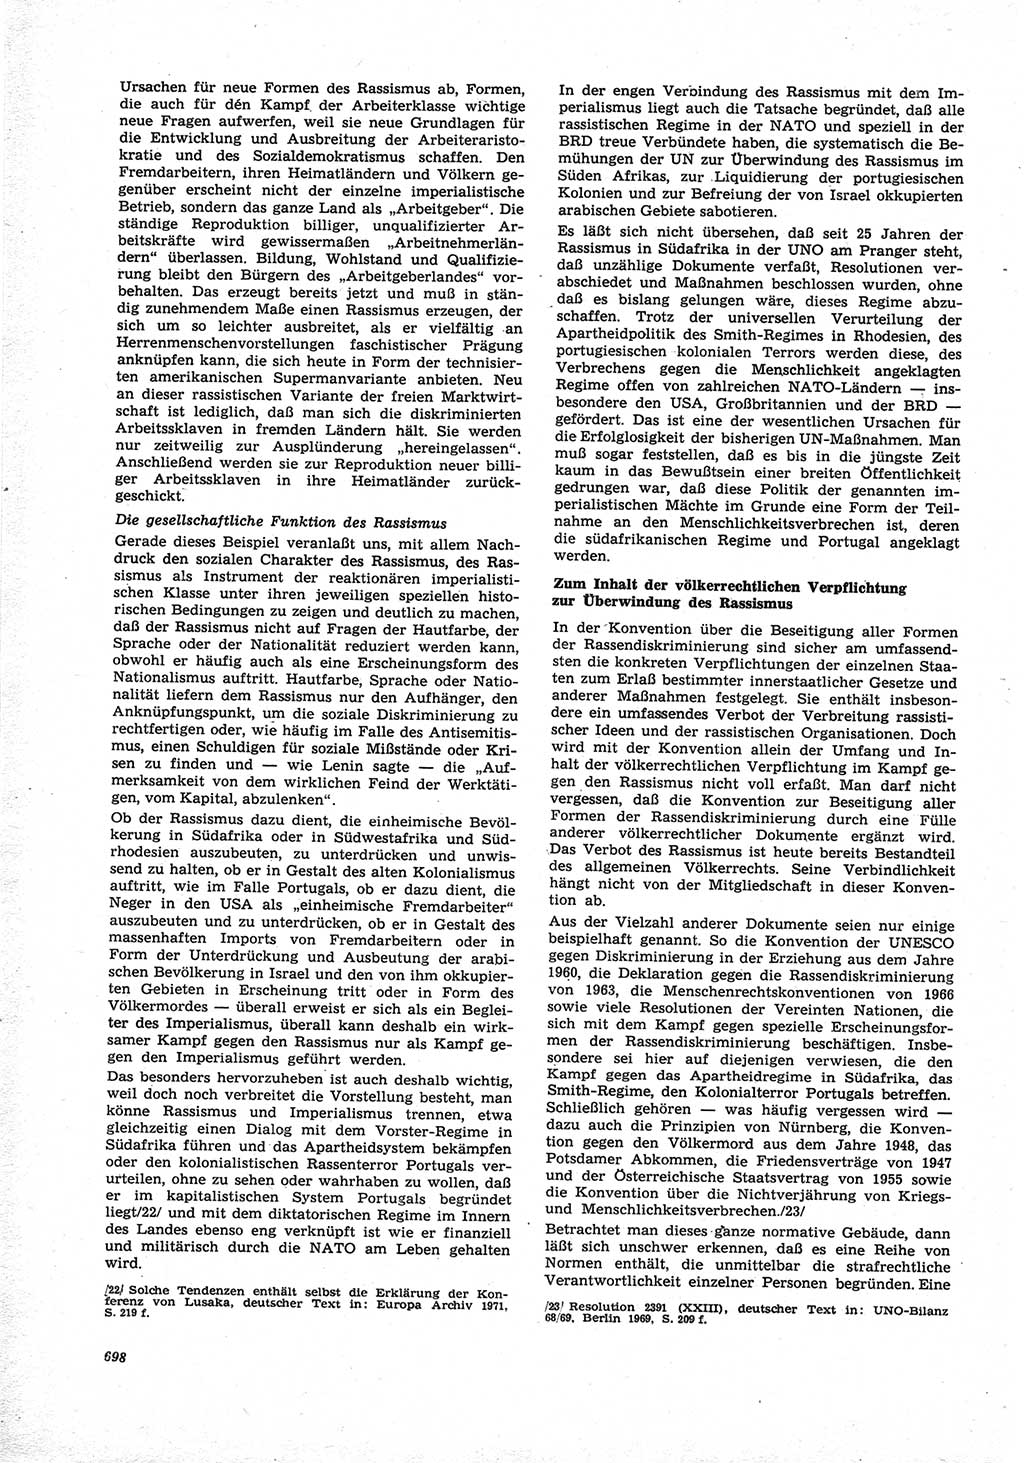 Neue Justiz (NJ), Zeitschrift für Recht und Rechtswissenschaft [Deutsche Demokratische Republik (DDR)], 25. Jahrgang 1971, Seite 698 (NJ DDR 1971, S. 698)